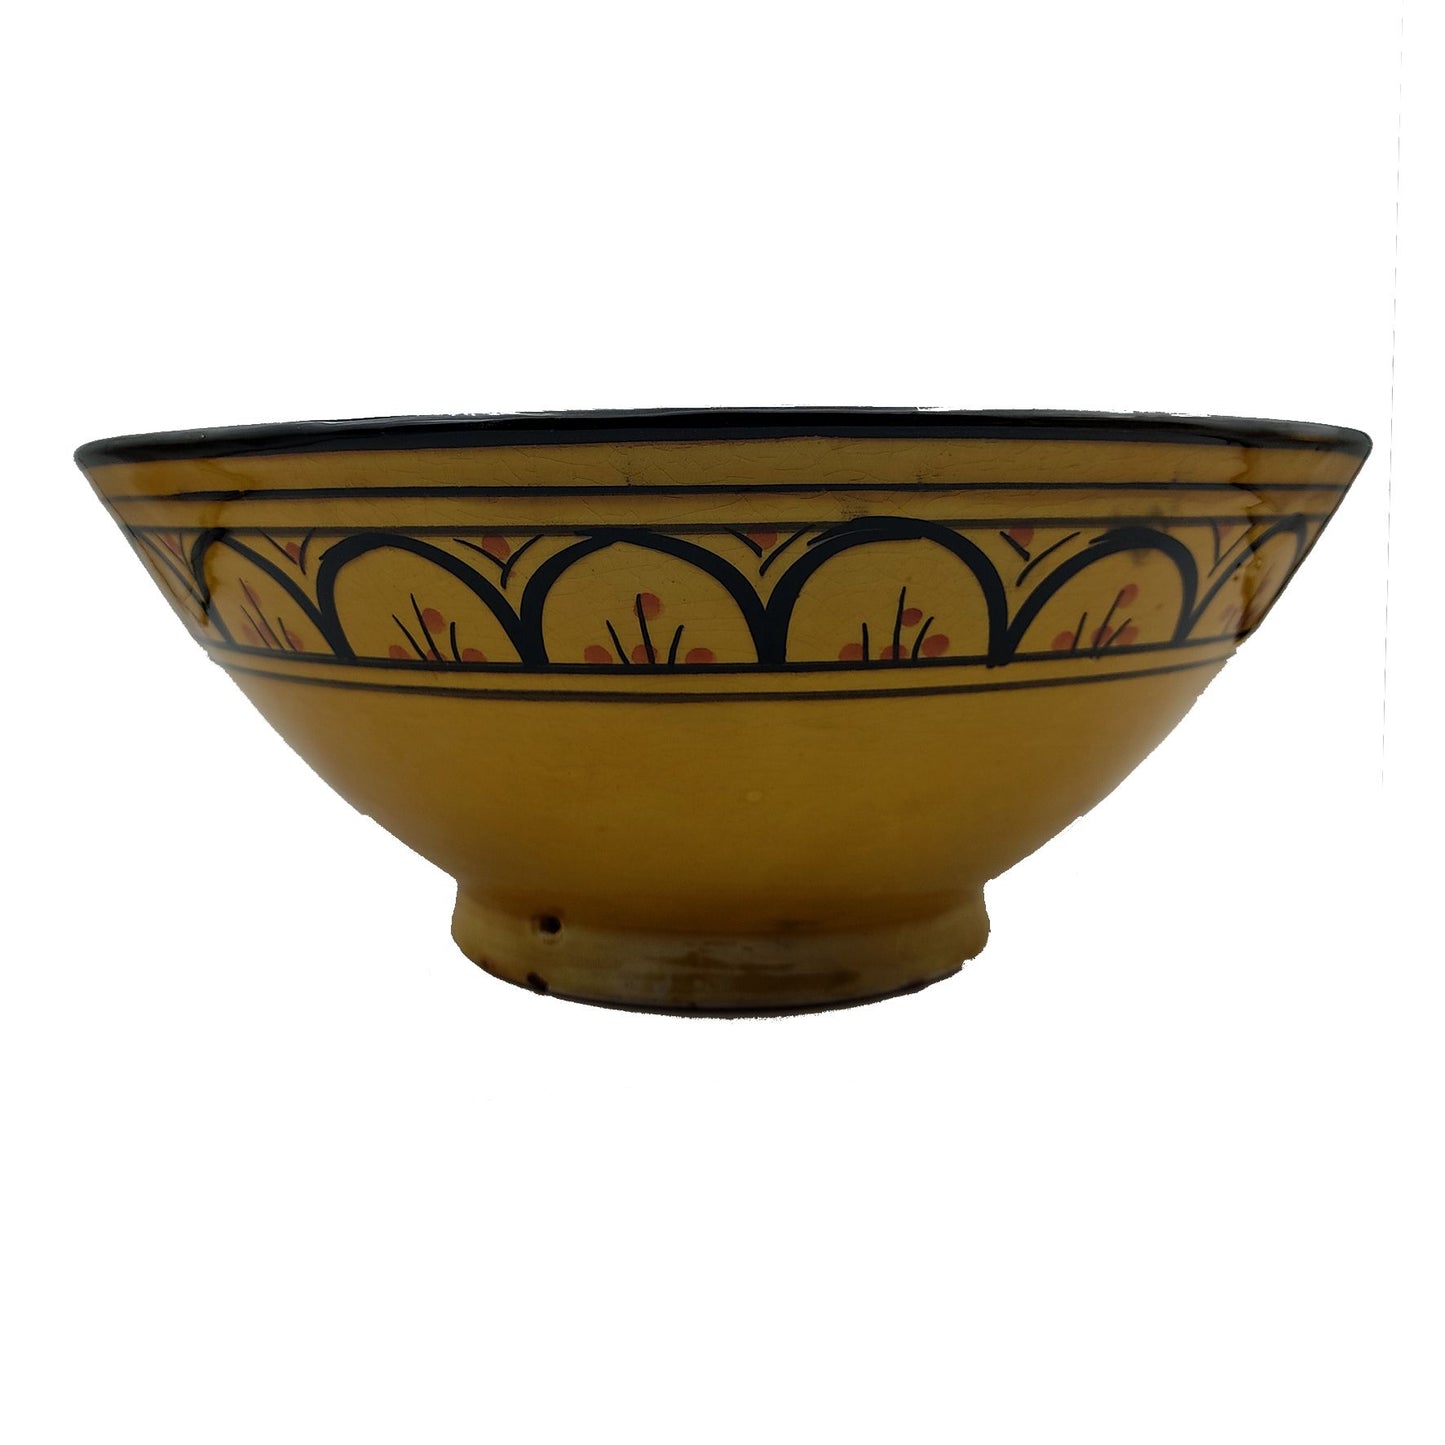 Ciotola Piatto Salse Zuppa Etnica Marocco Marocchina Ceramica Terracotta Diam. 31 cm 0902221222